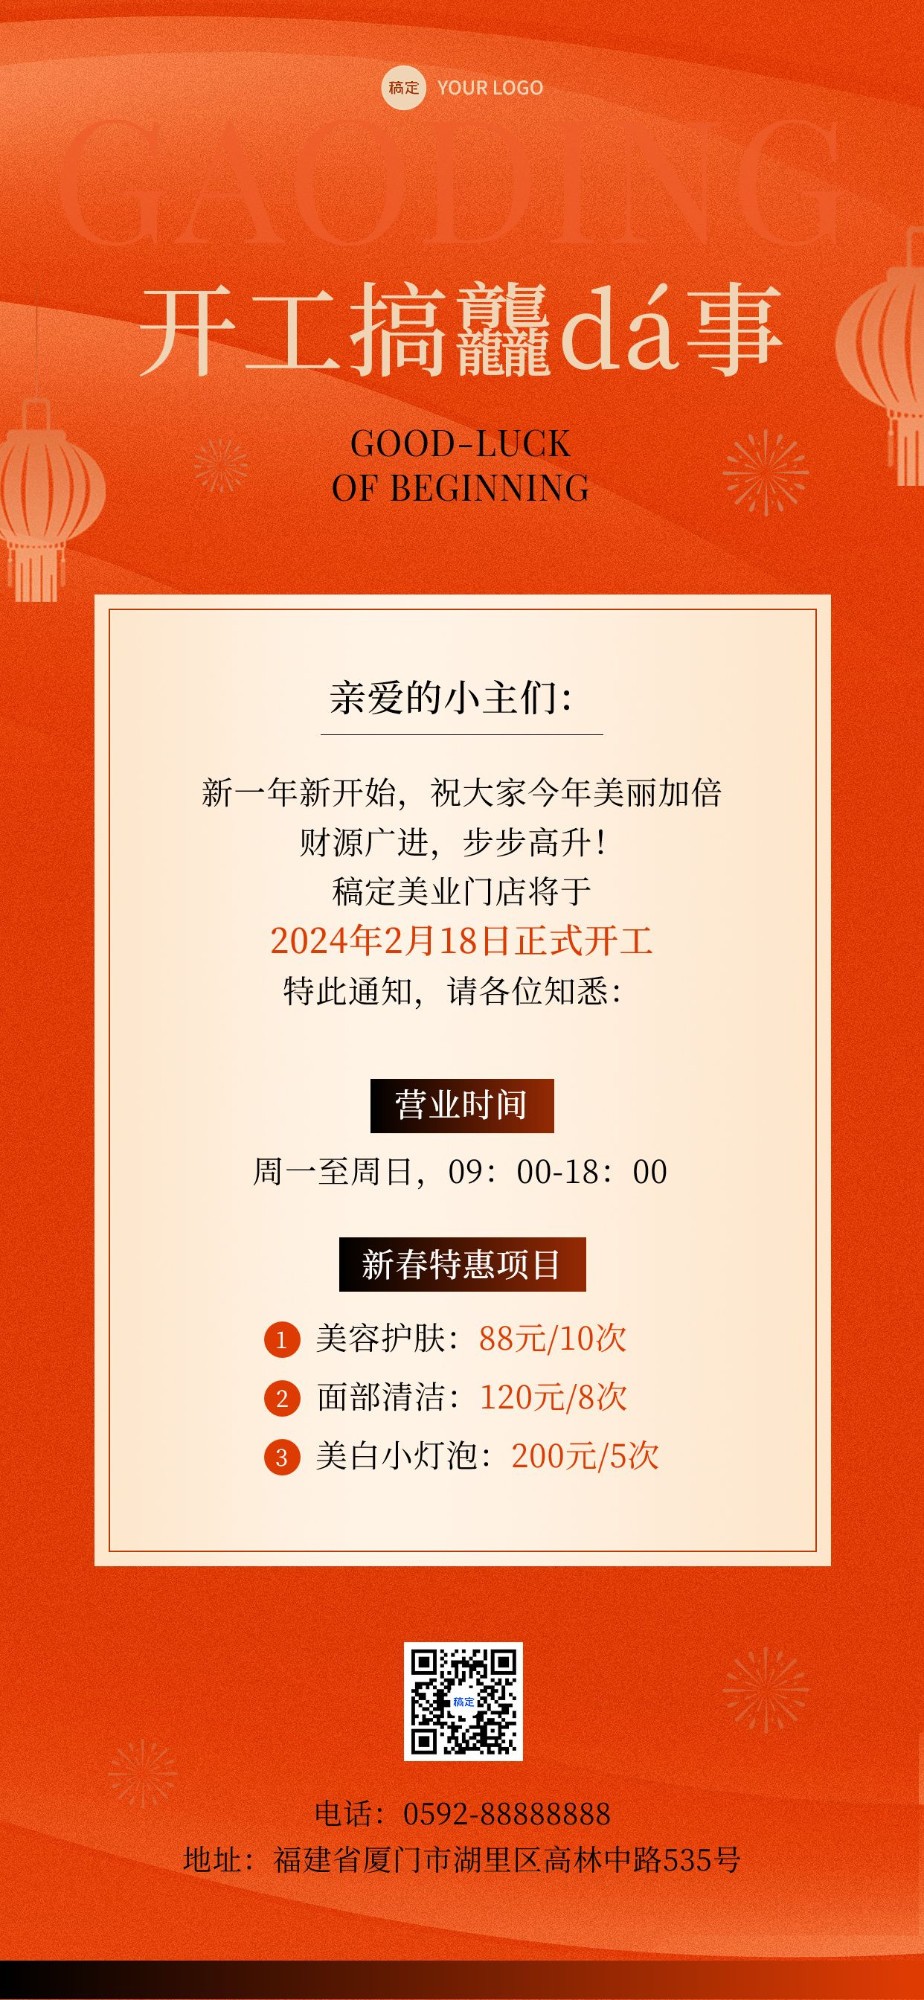 春节开工大吉美业门店营业通知公告卡项促销全屏竖版海报